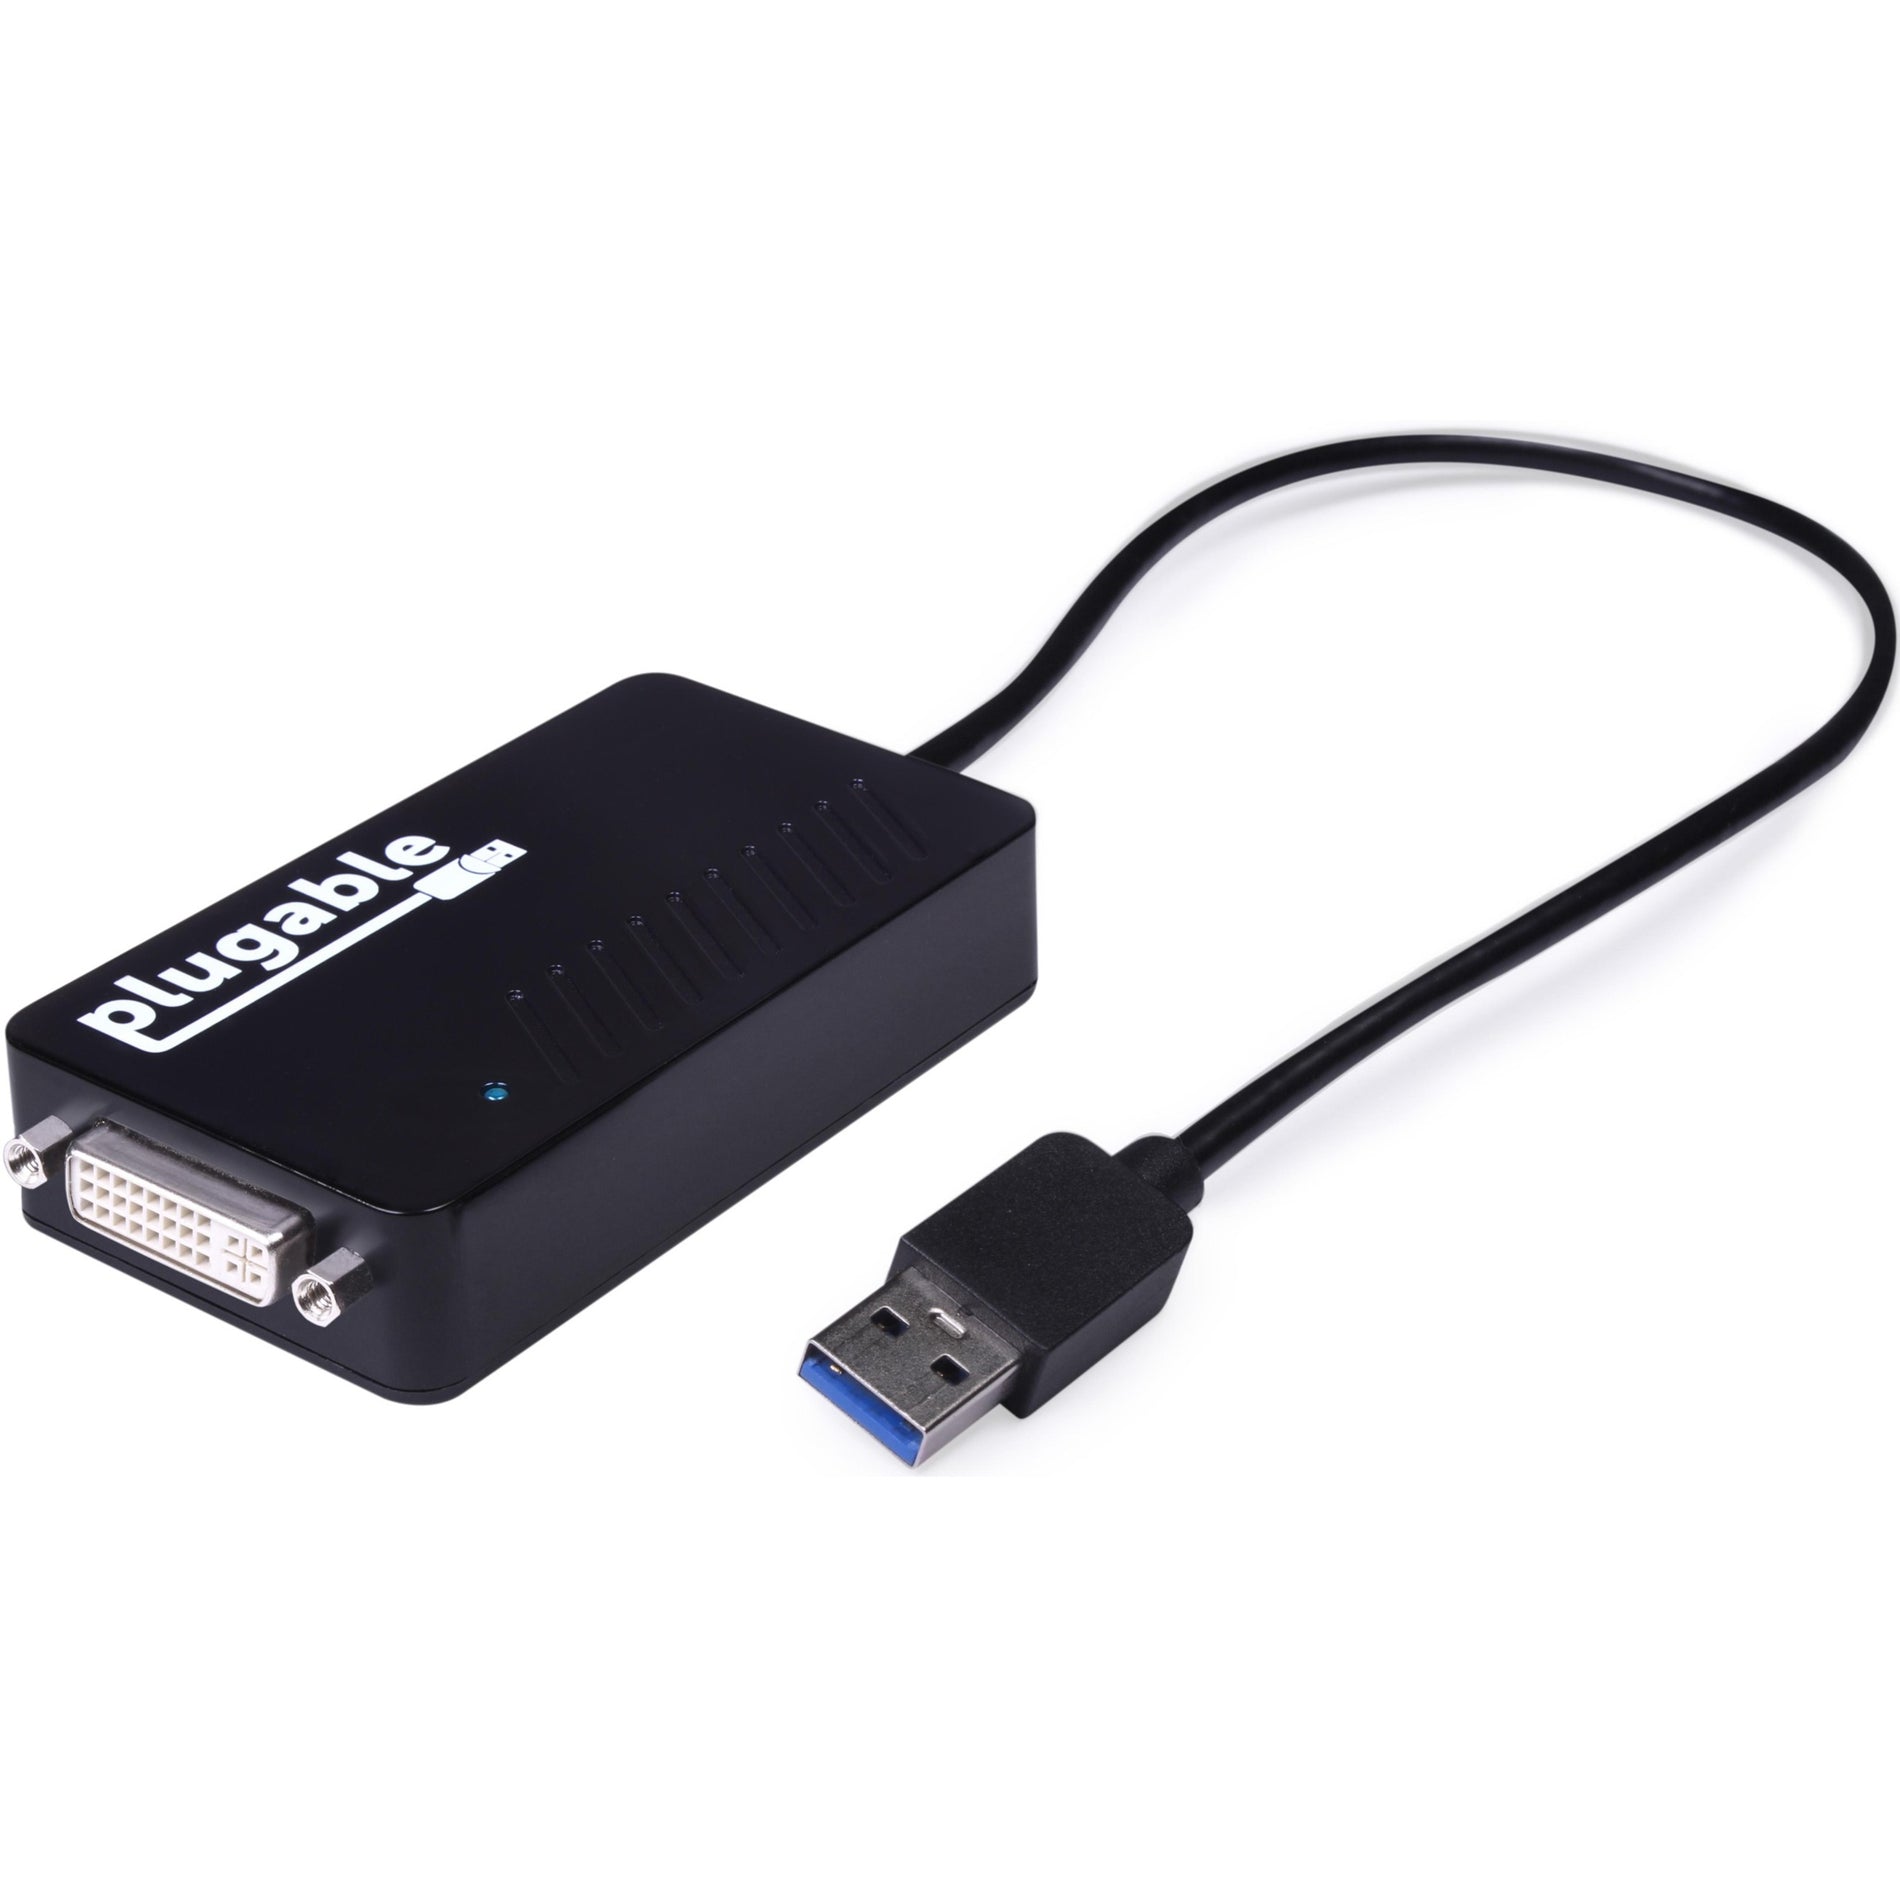 プラグイン可能 UGA-3000 USB 3.0 HDMI/DVI/VGA アダプター、複数のモニター用の簡単なディスプレイ拡張用 PC ブランド名: Plugable  プラグイン可能 UGA-3000 USB 3.0 HDMI/DVI/VGA アダプター、複数のモニター用の簡単なディスプレイ拡張用 PC ブランド名: プラグラブル